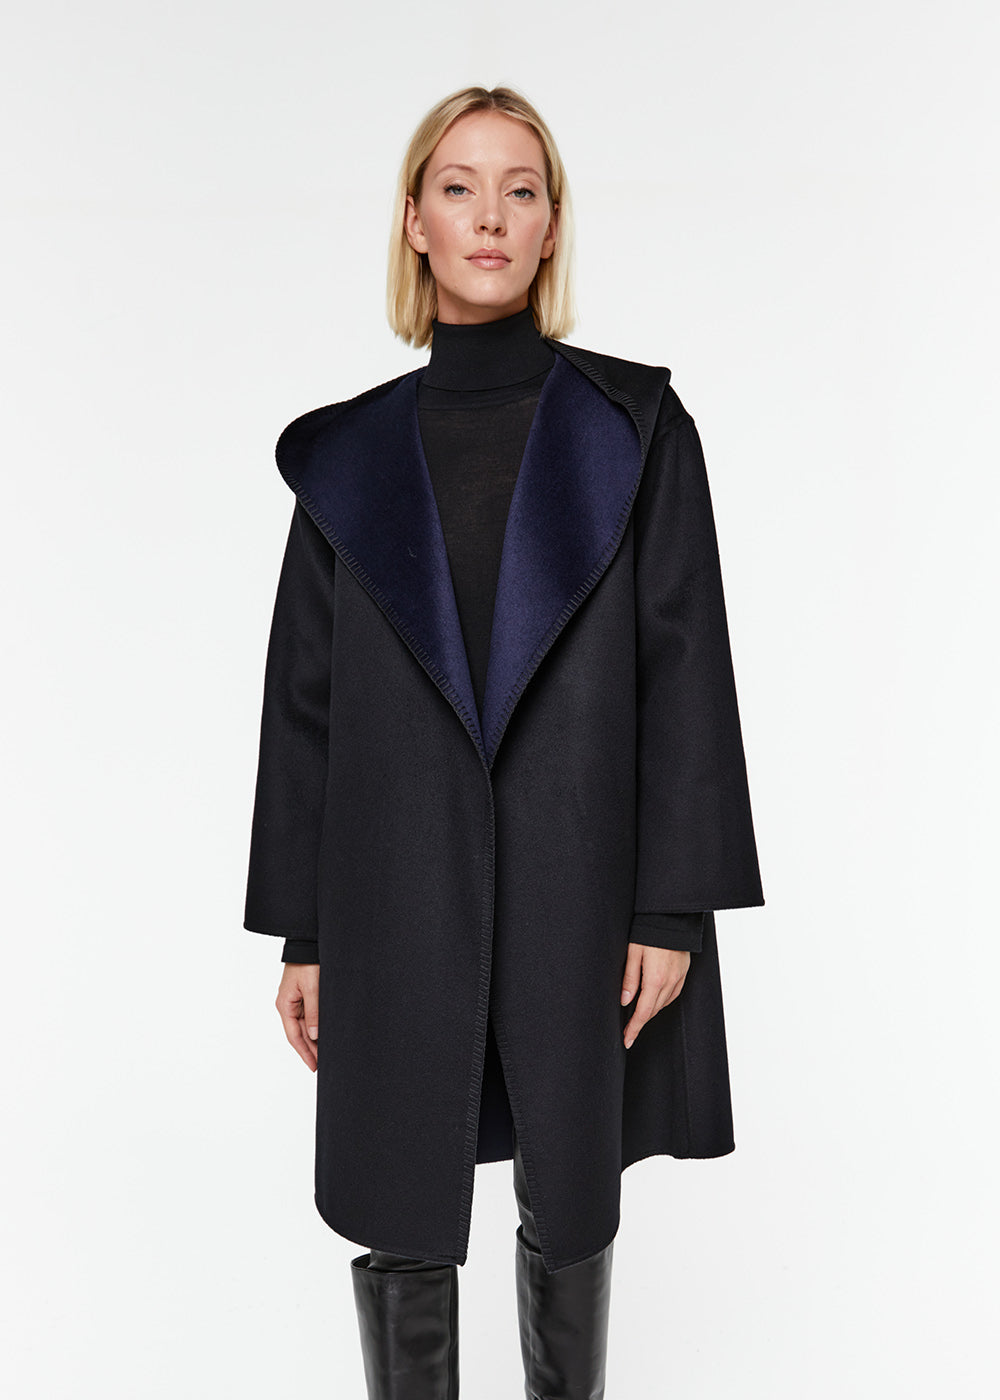 manteau réversible capuche col tailleur laine cachemire noir marine